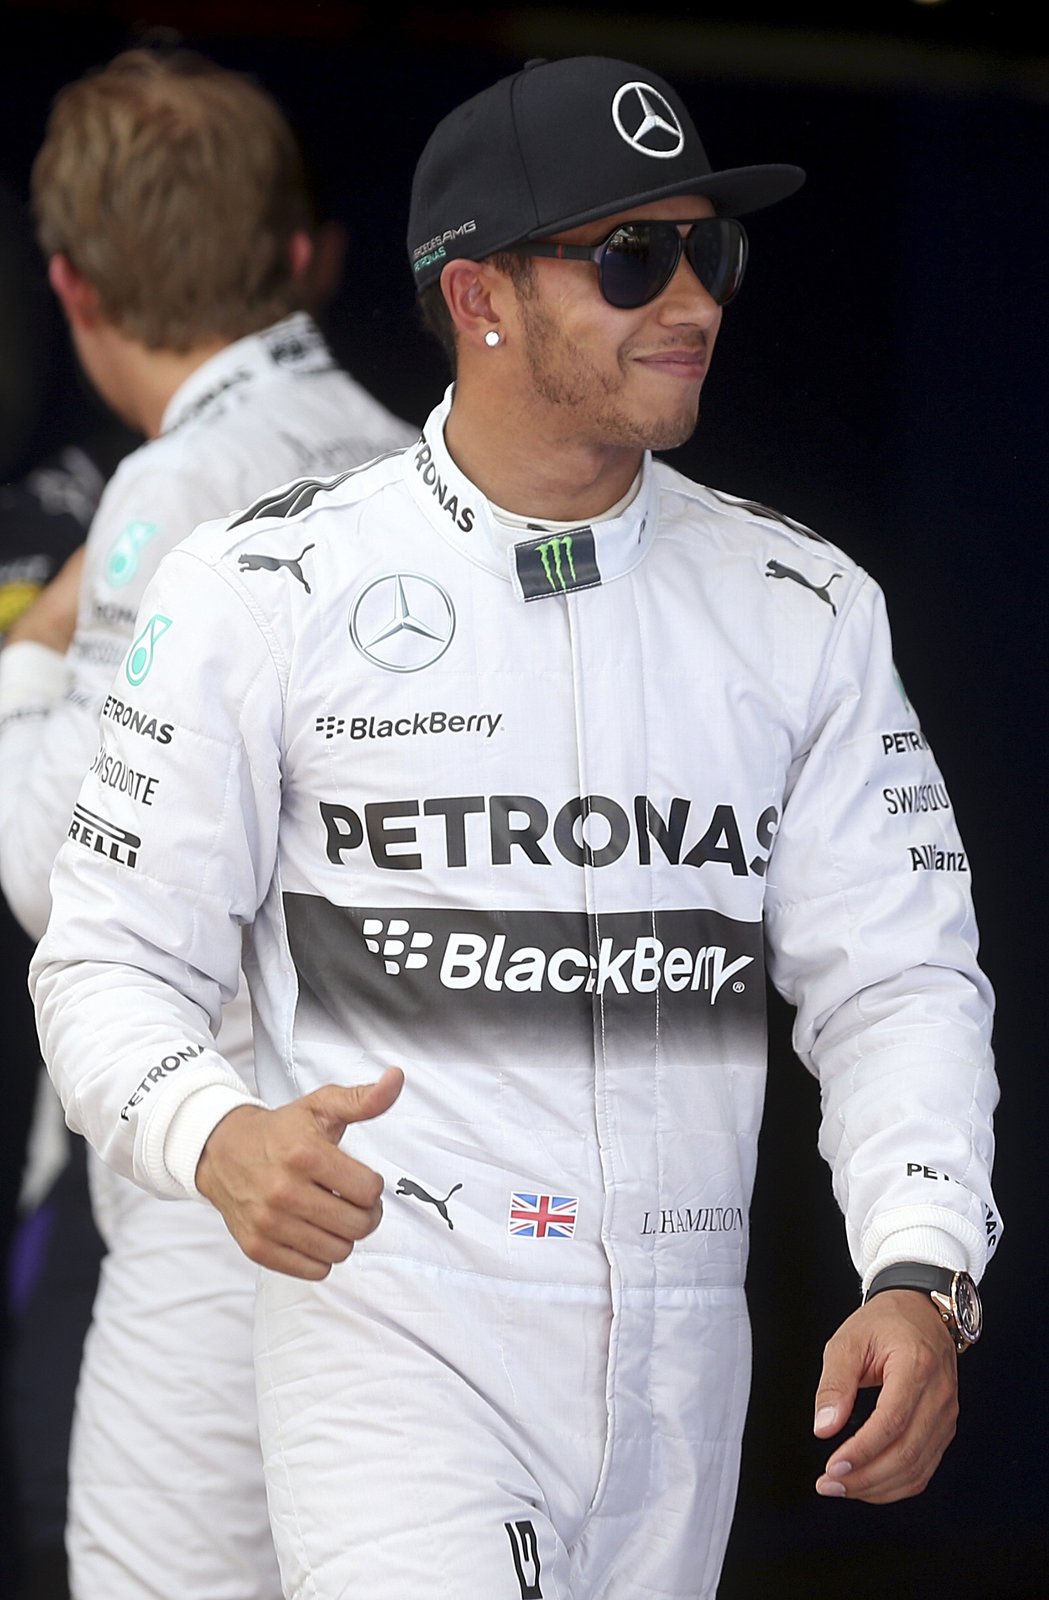 Lewis Hamilton z týmu Mercedes vyhrál sobotní kvalifikaci na Velkou cenu Španělska F1, gesto s palcem nahoru ukazuje, že byl se svým výkonem spokojený